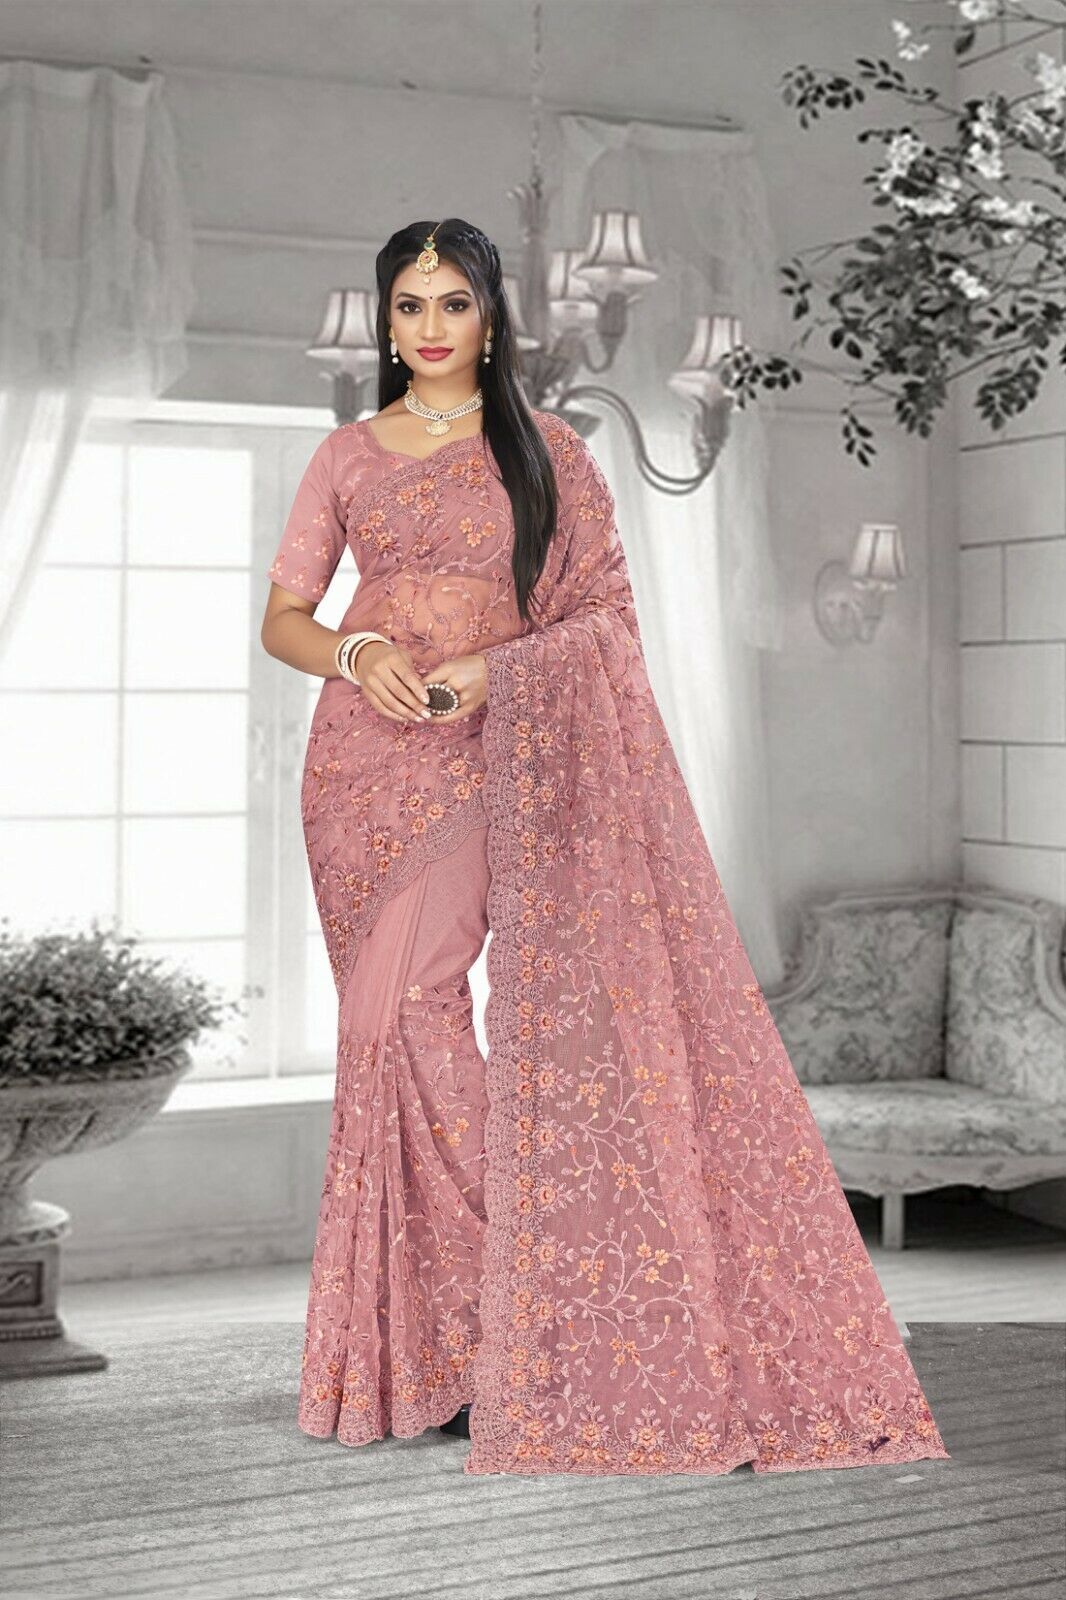 Designer Dusty Pink Resham Coding Embroidery Work Sari Net Wedding Wear Saree